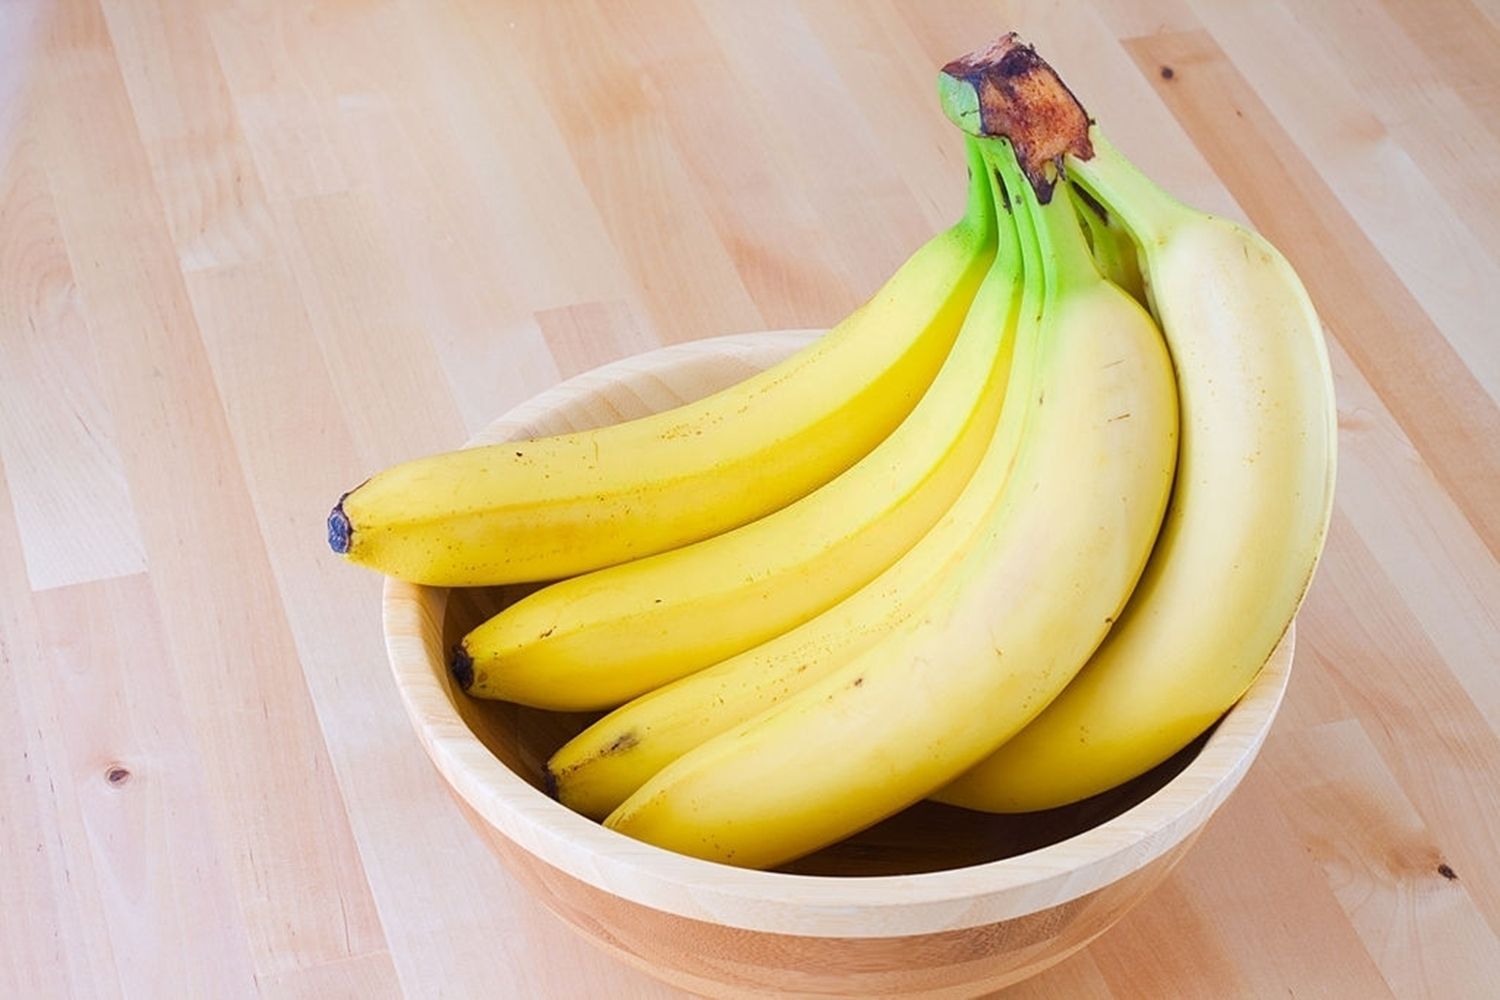 El plátano, una fruta muy completa con múltiples propiedades para nuestra salud